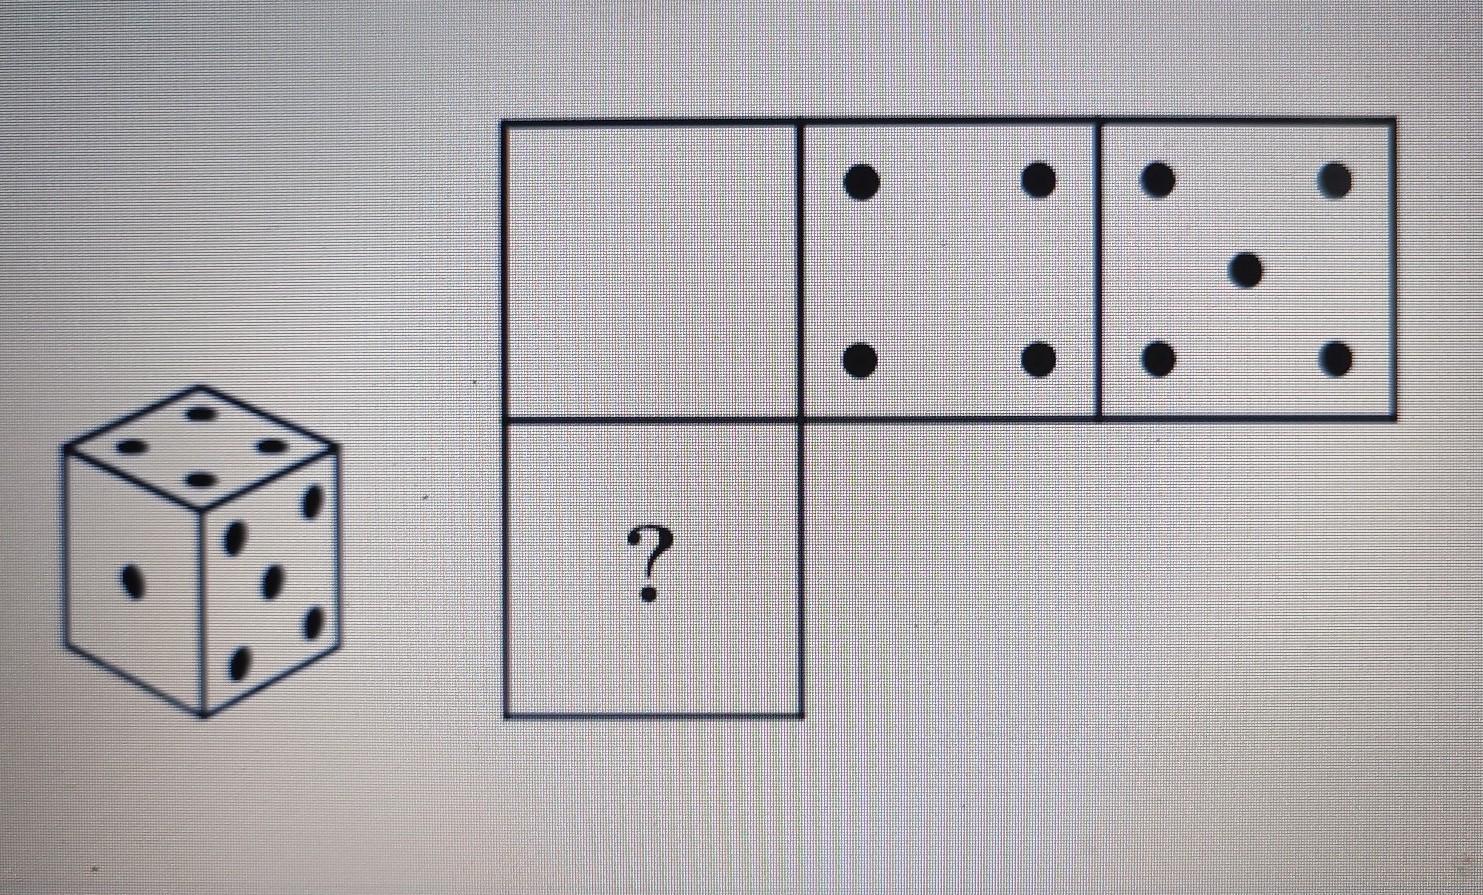 Сколько точек на кубике. Грани игрального кубика. Расположение точек на игральном кубике. Игральный кубик прокатили по столу. Картинки игрального кубика со всех сторон.